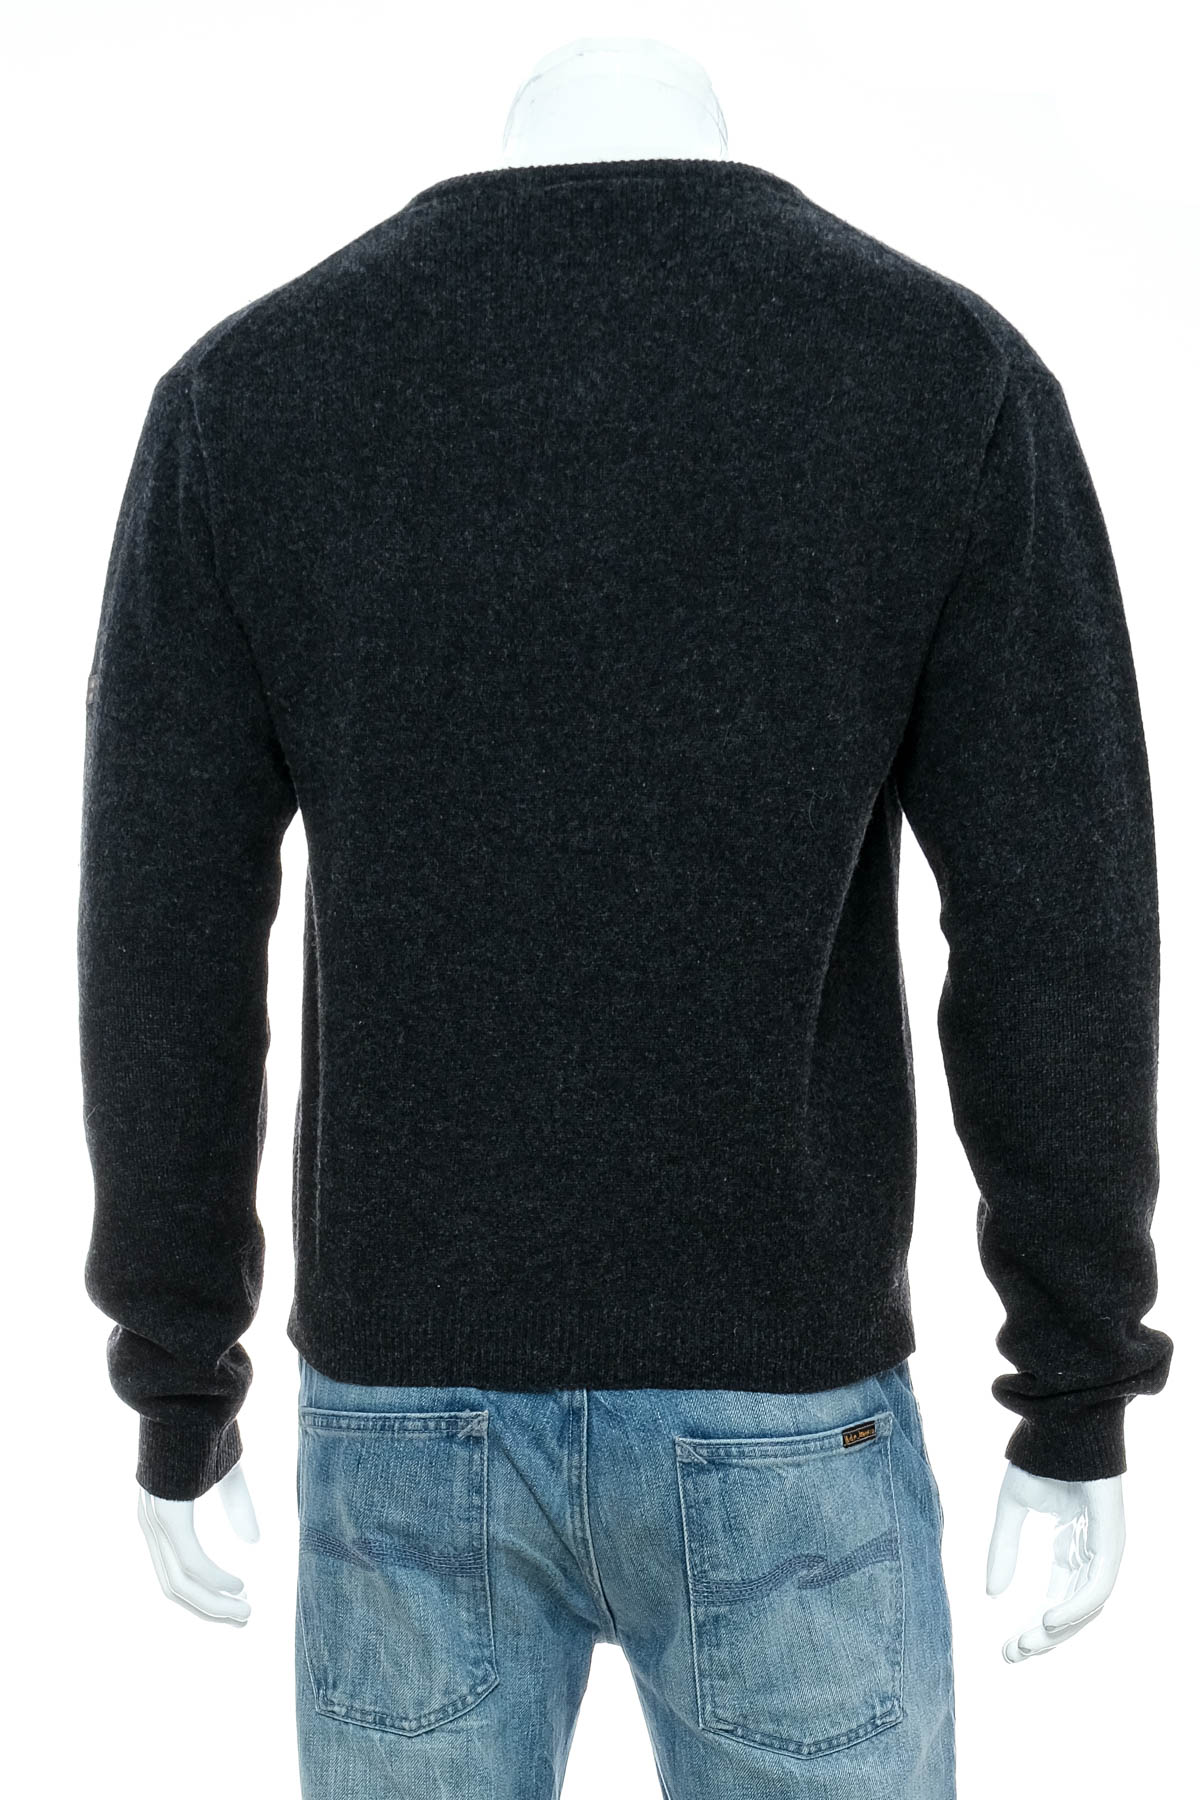 Men's sweater - McGregor - 1